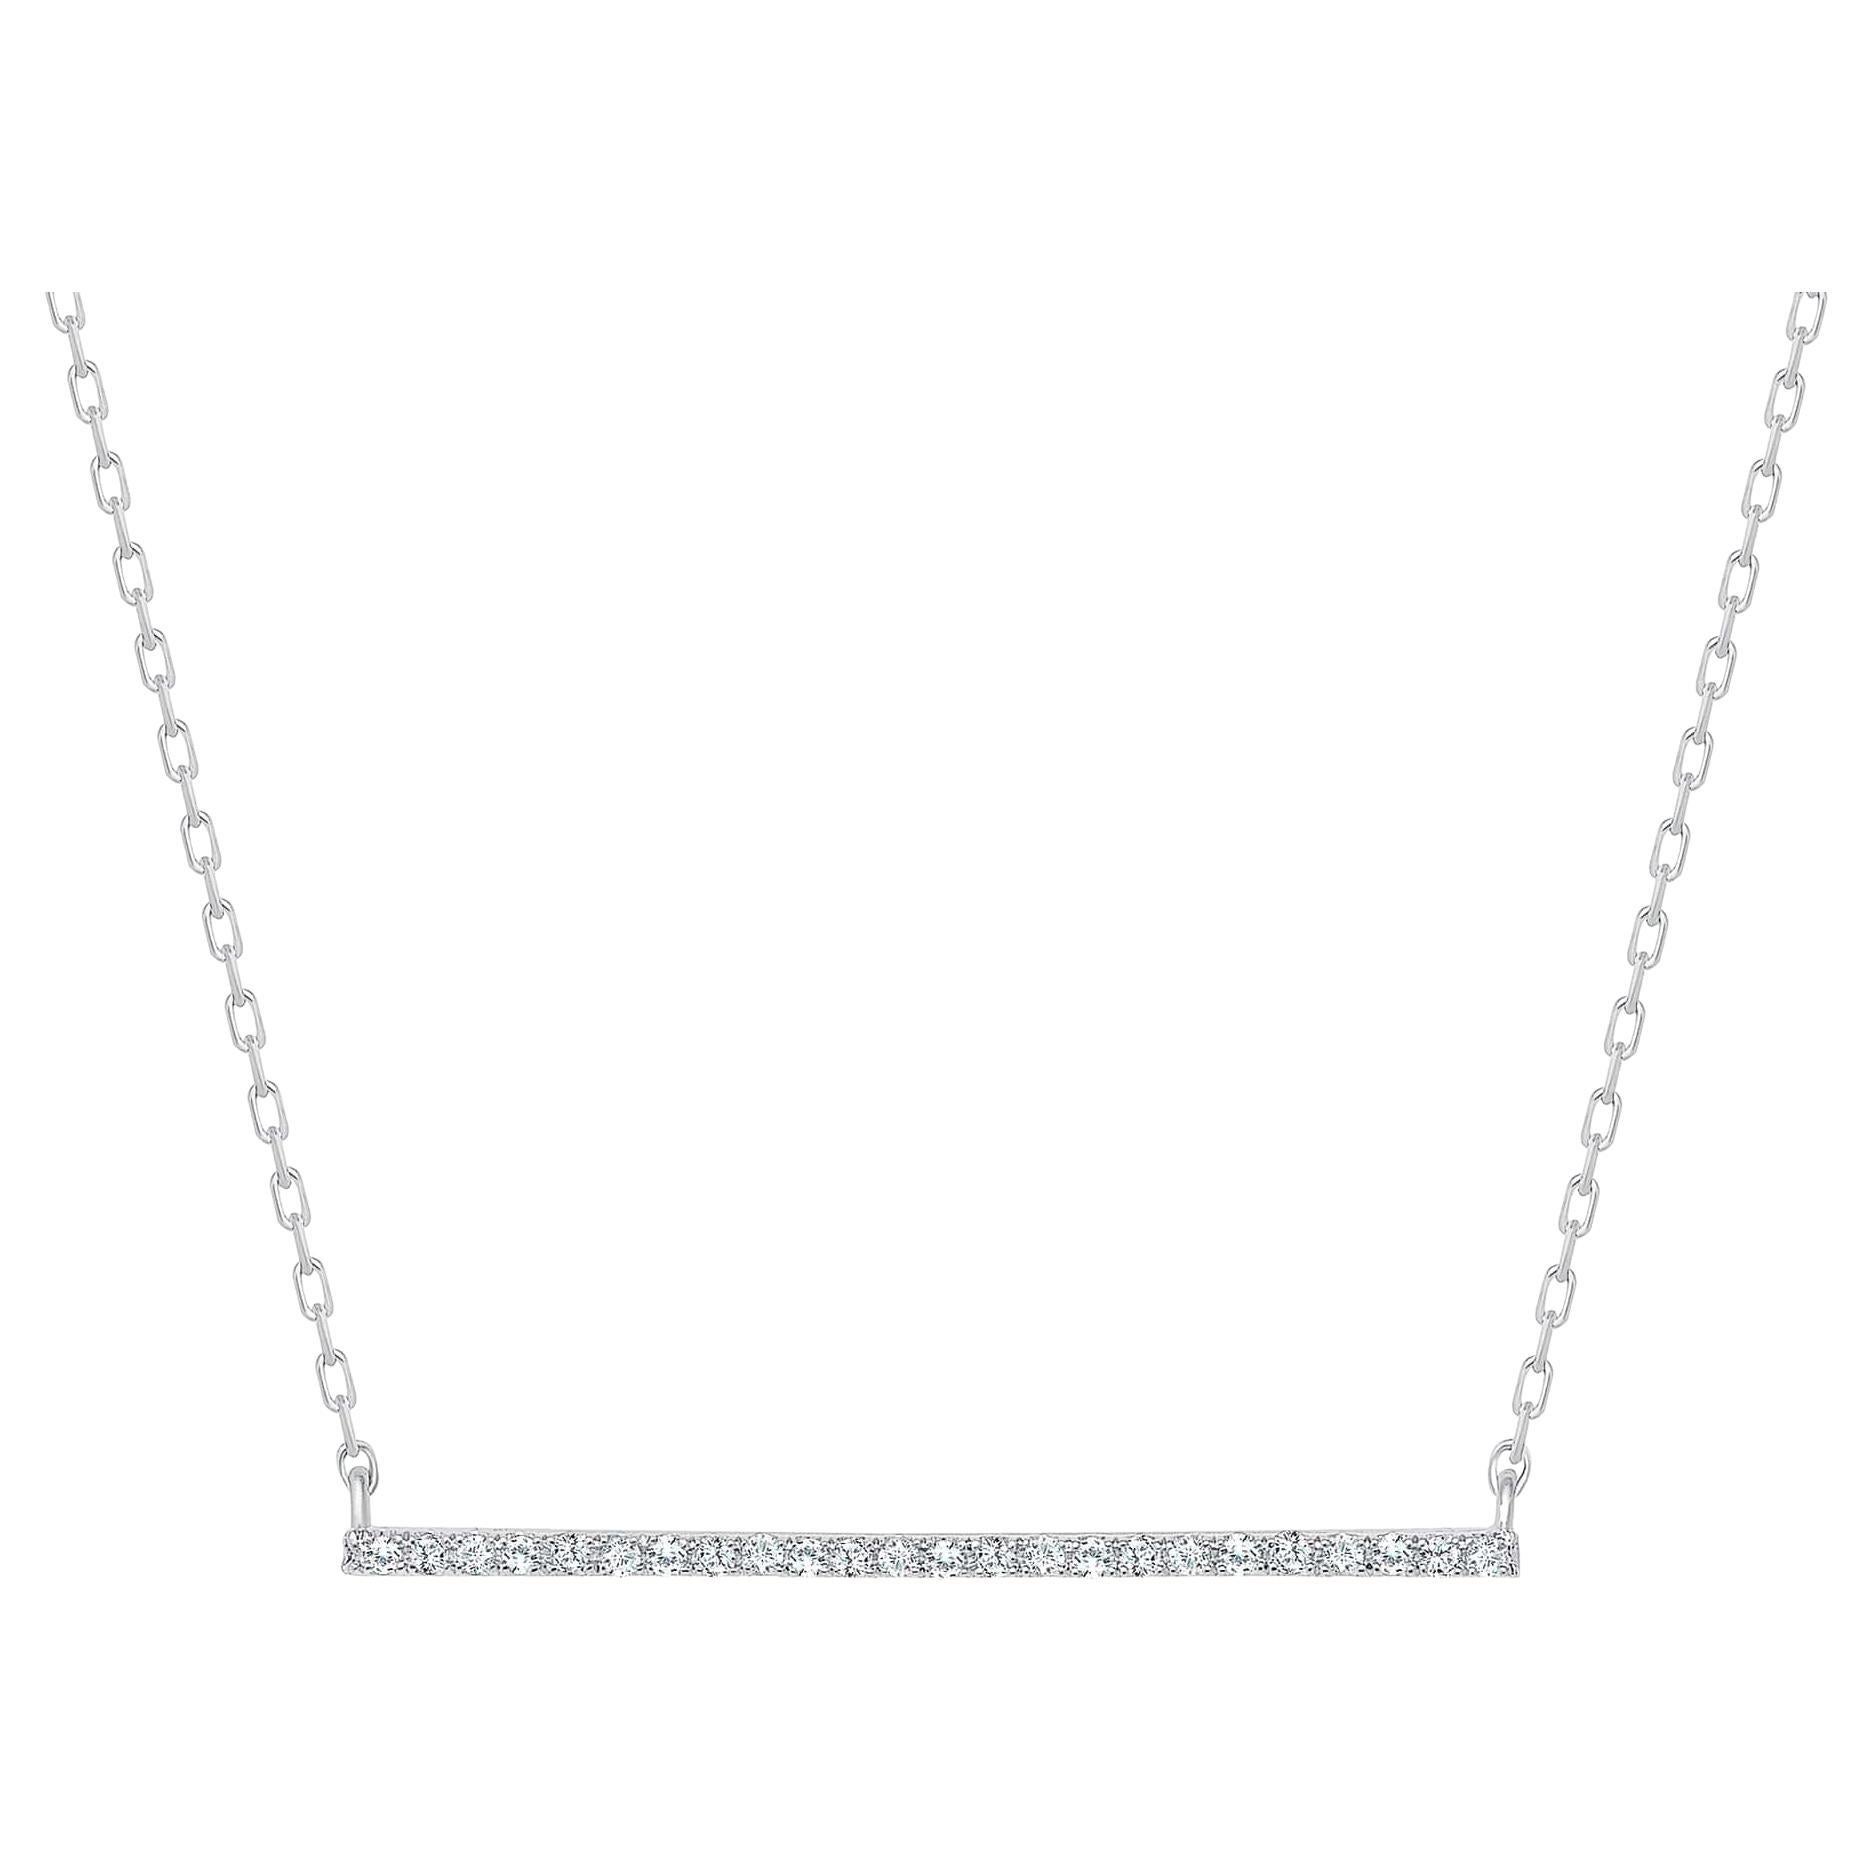 Diese runde Diamant-Bar-Halskette bietet einen niedlichen und modischen Trend-Look. Hervorragende Wahl als Geschenk für Jahrestag, Geburtstag, Abschlussfeier, Valentinstag und Feiertage.

Metall : 14k Gold, 18k Gold, Platin
Diamant-Schliff :